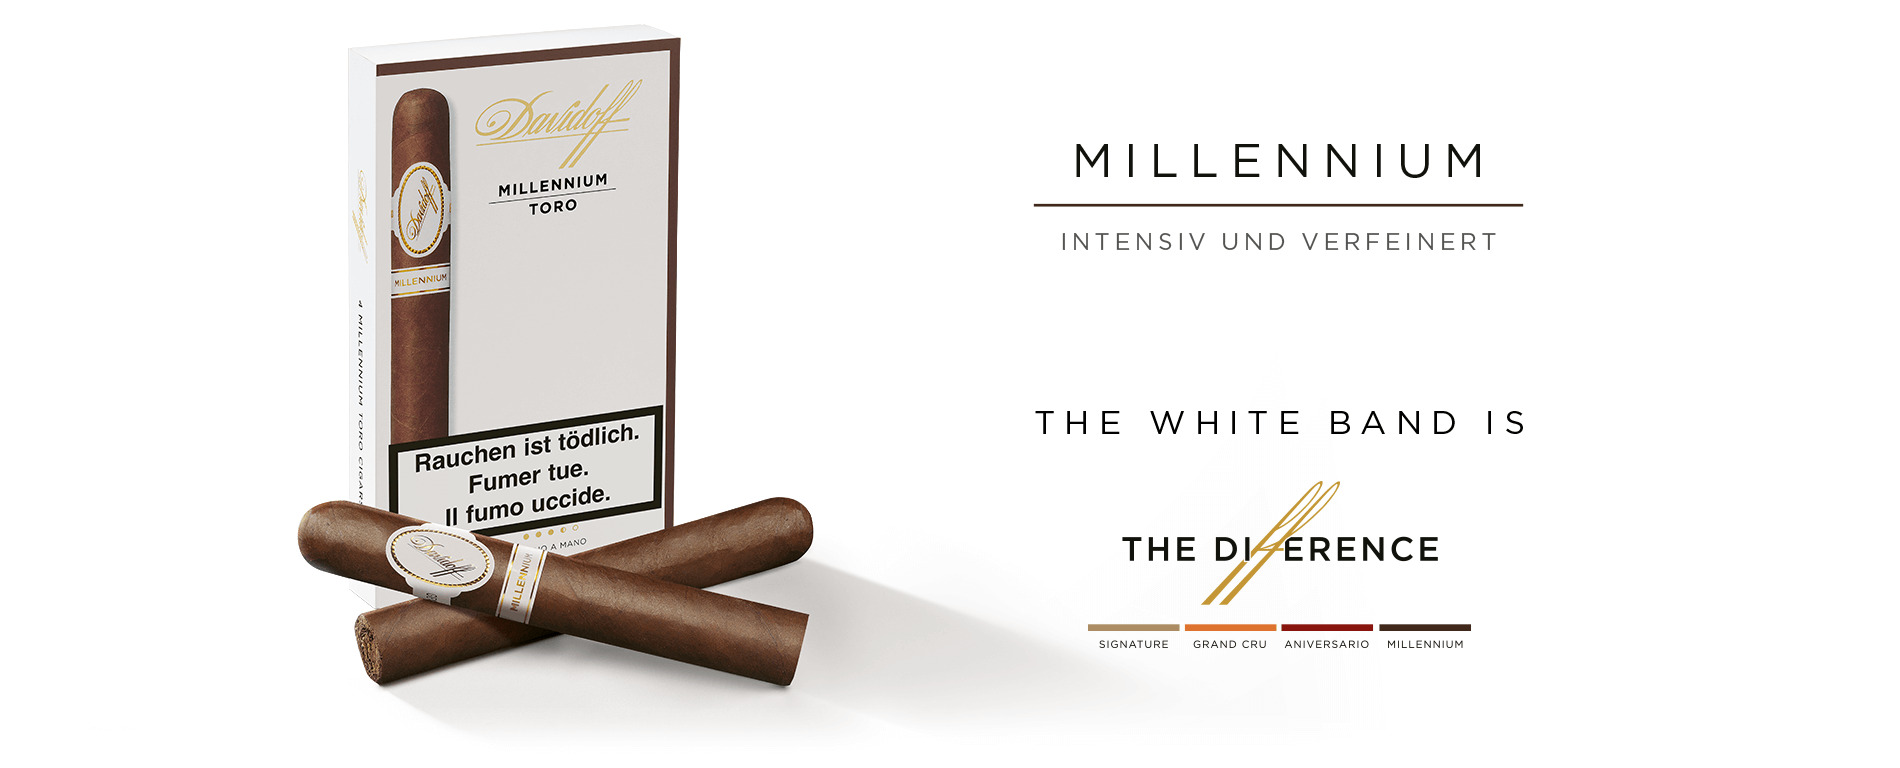 Eine Schachtel Davidoff Millennium Toro-Zigarren mit zwei gekreuzten Zigarren davorliegend. 